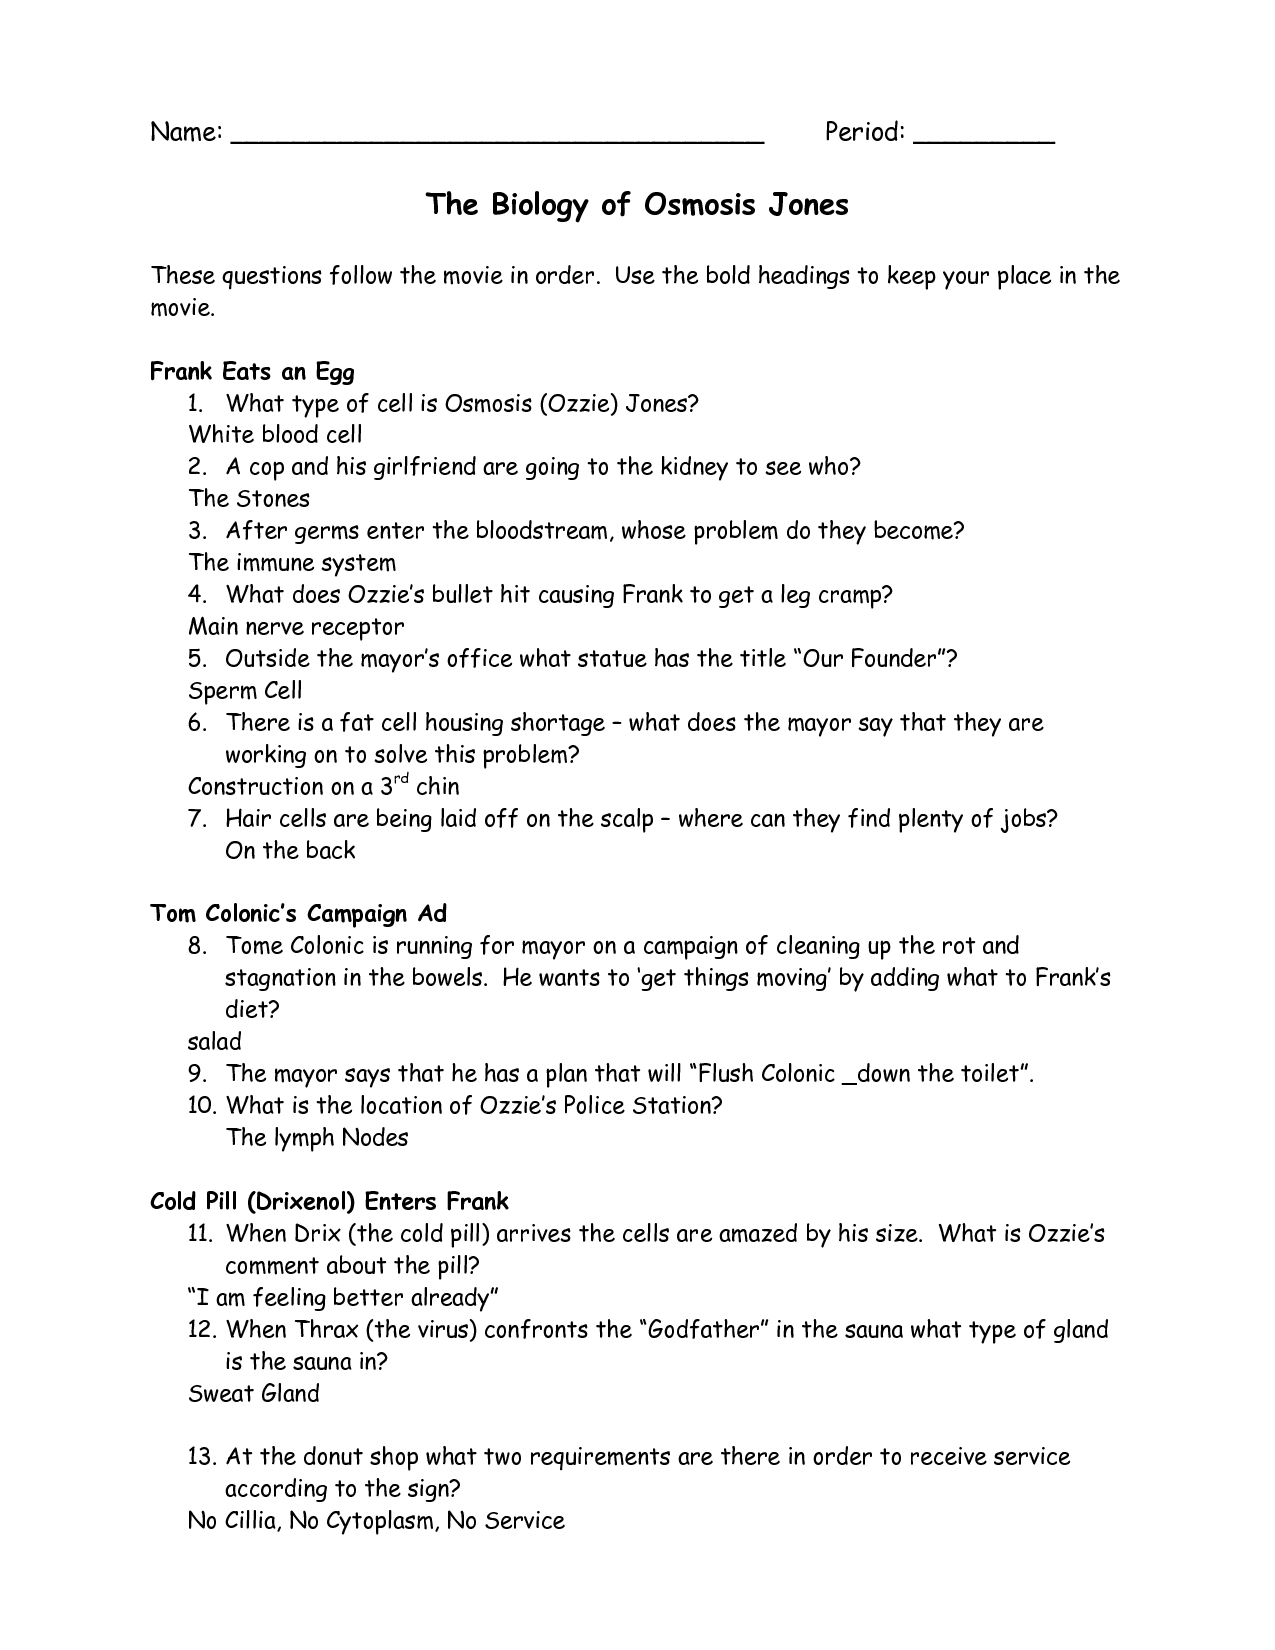 Osmosis Jones Movie Worksheet Answers